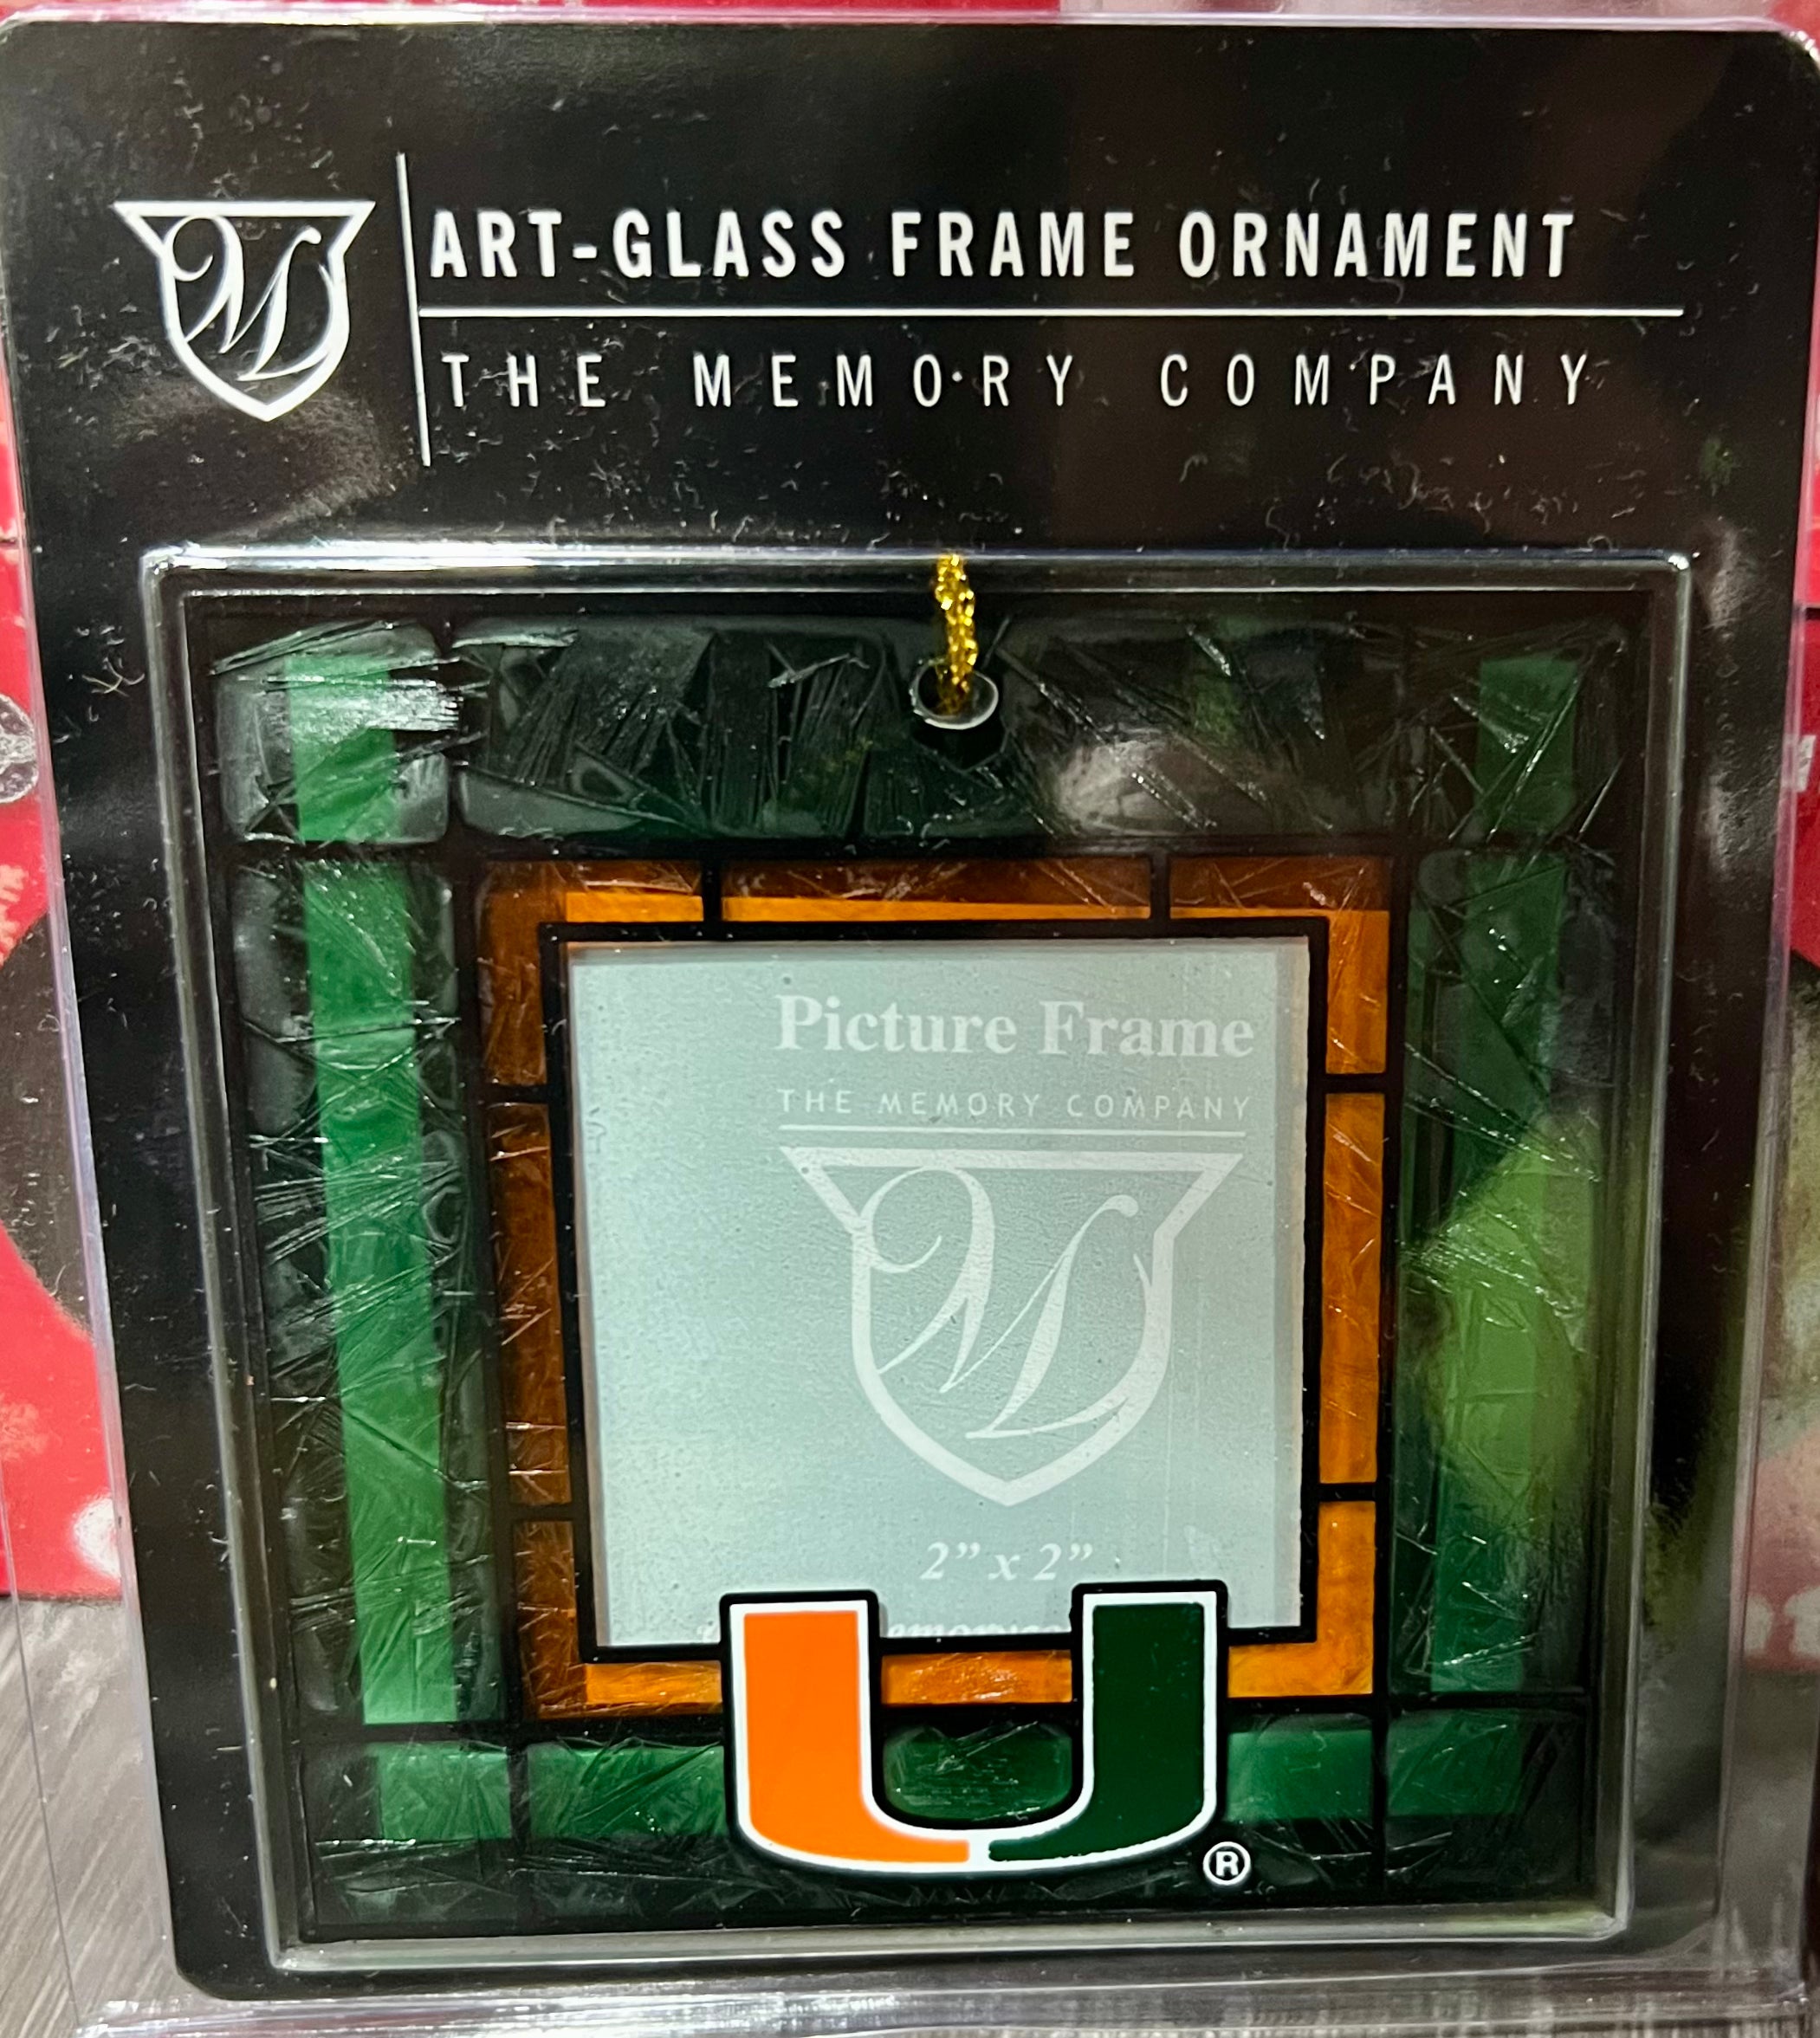 Miami Hurricanes Art-Glass Frame Ornaments